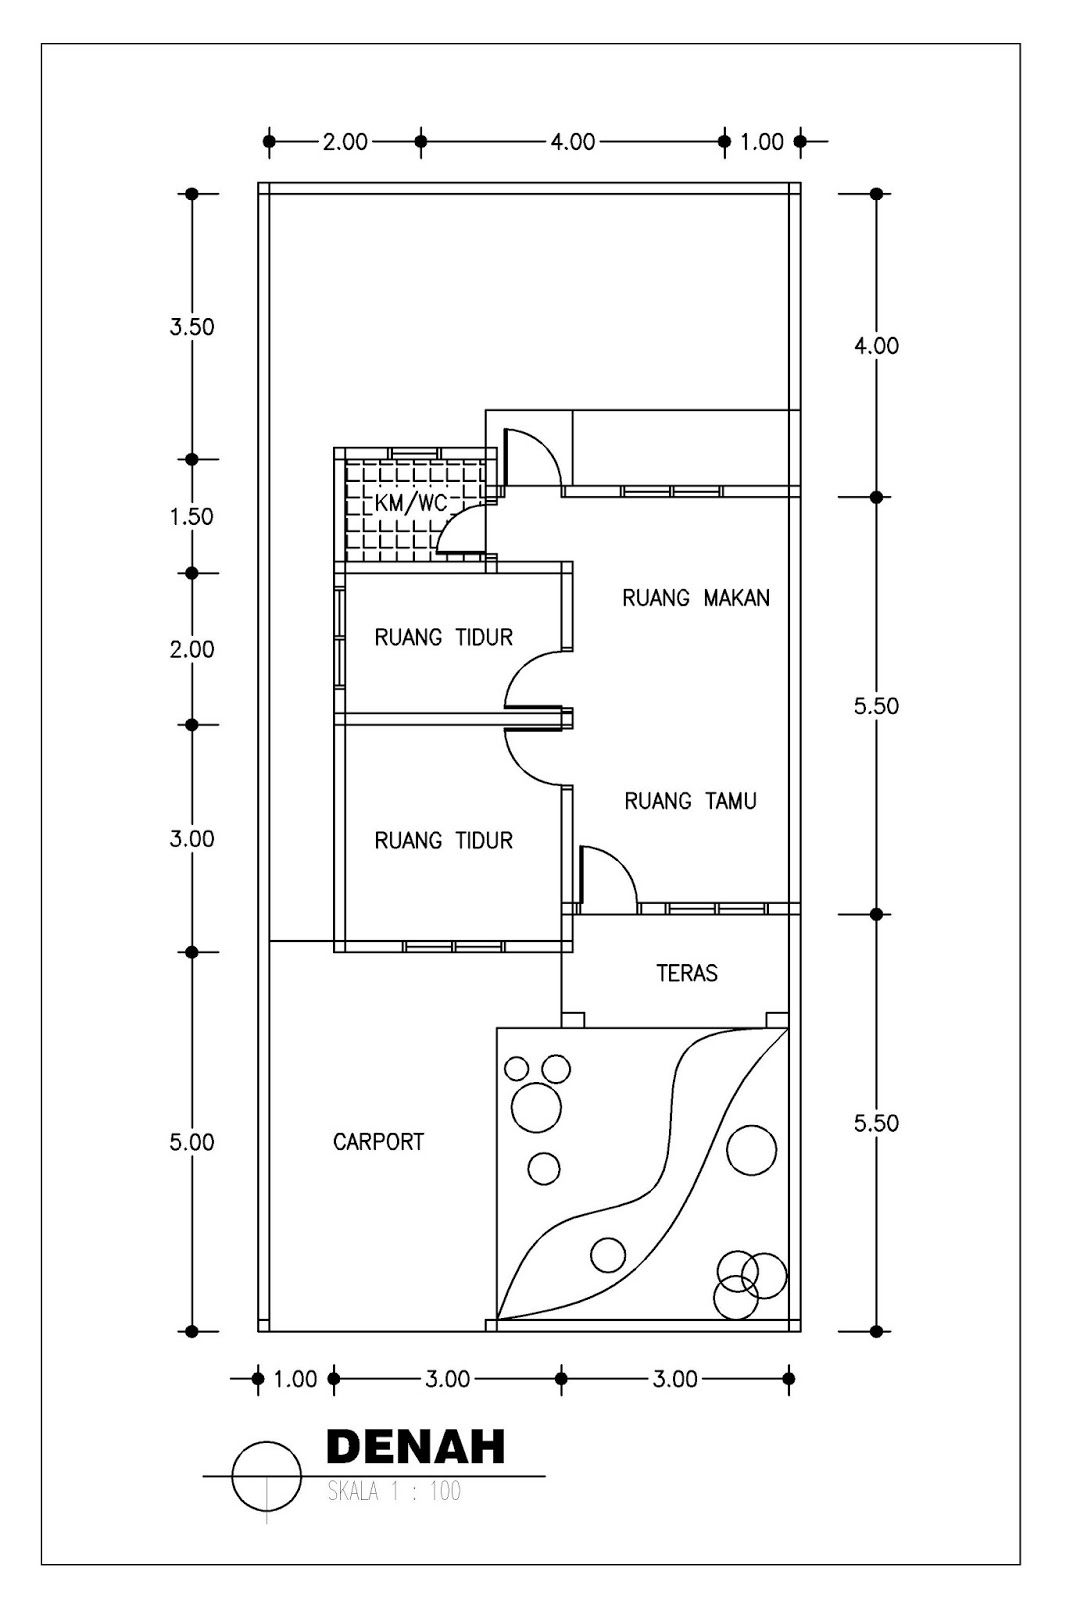 Gambar Desain Rumah Minimalis Type 36 1 2 Lantai 2014 Terbaru 2015